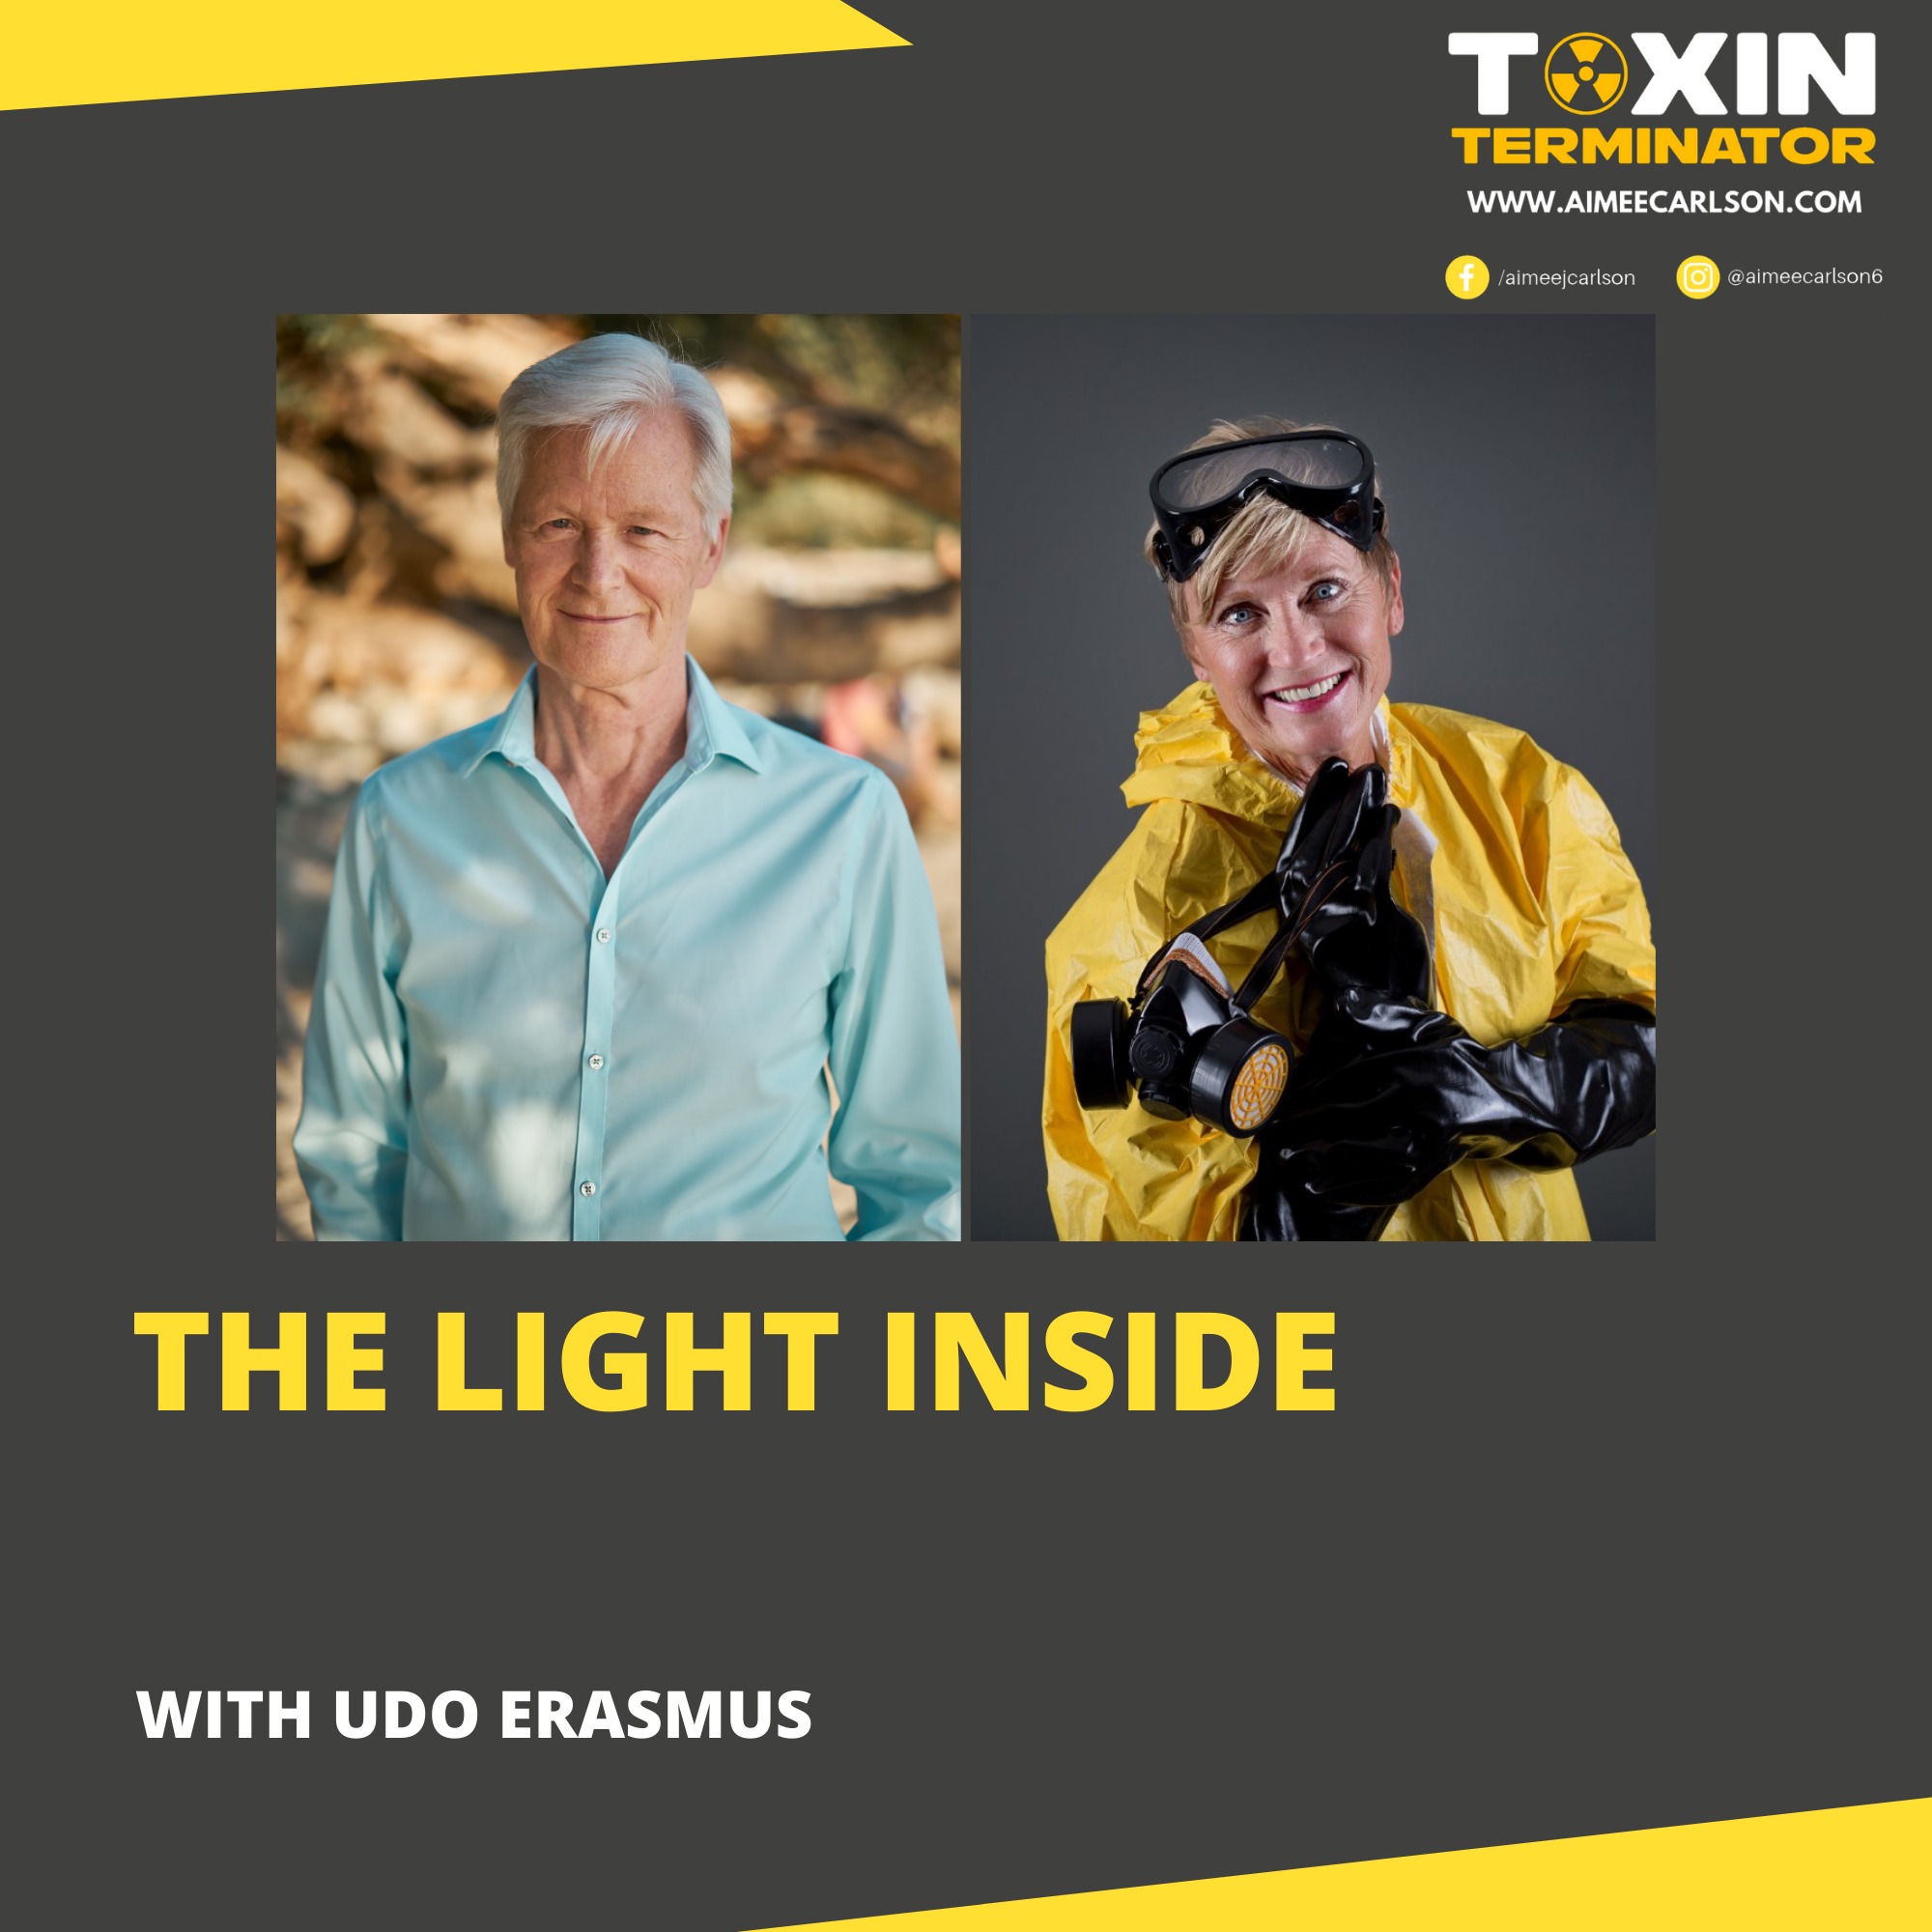 The Light Inside with Udo Erasmus